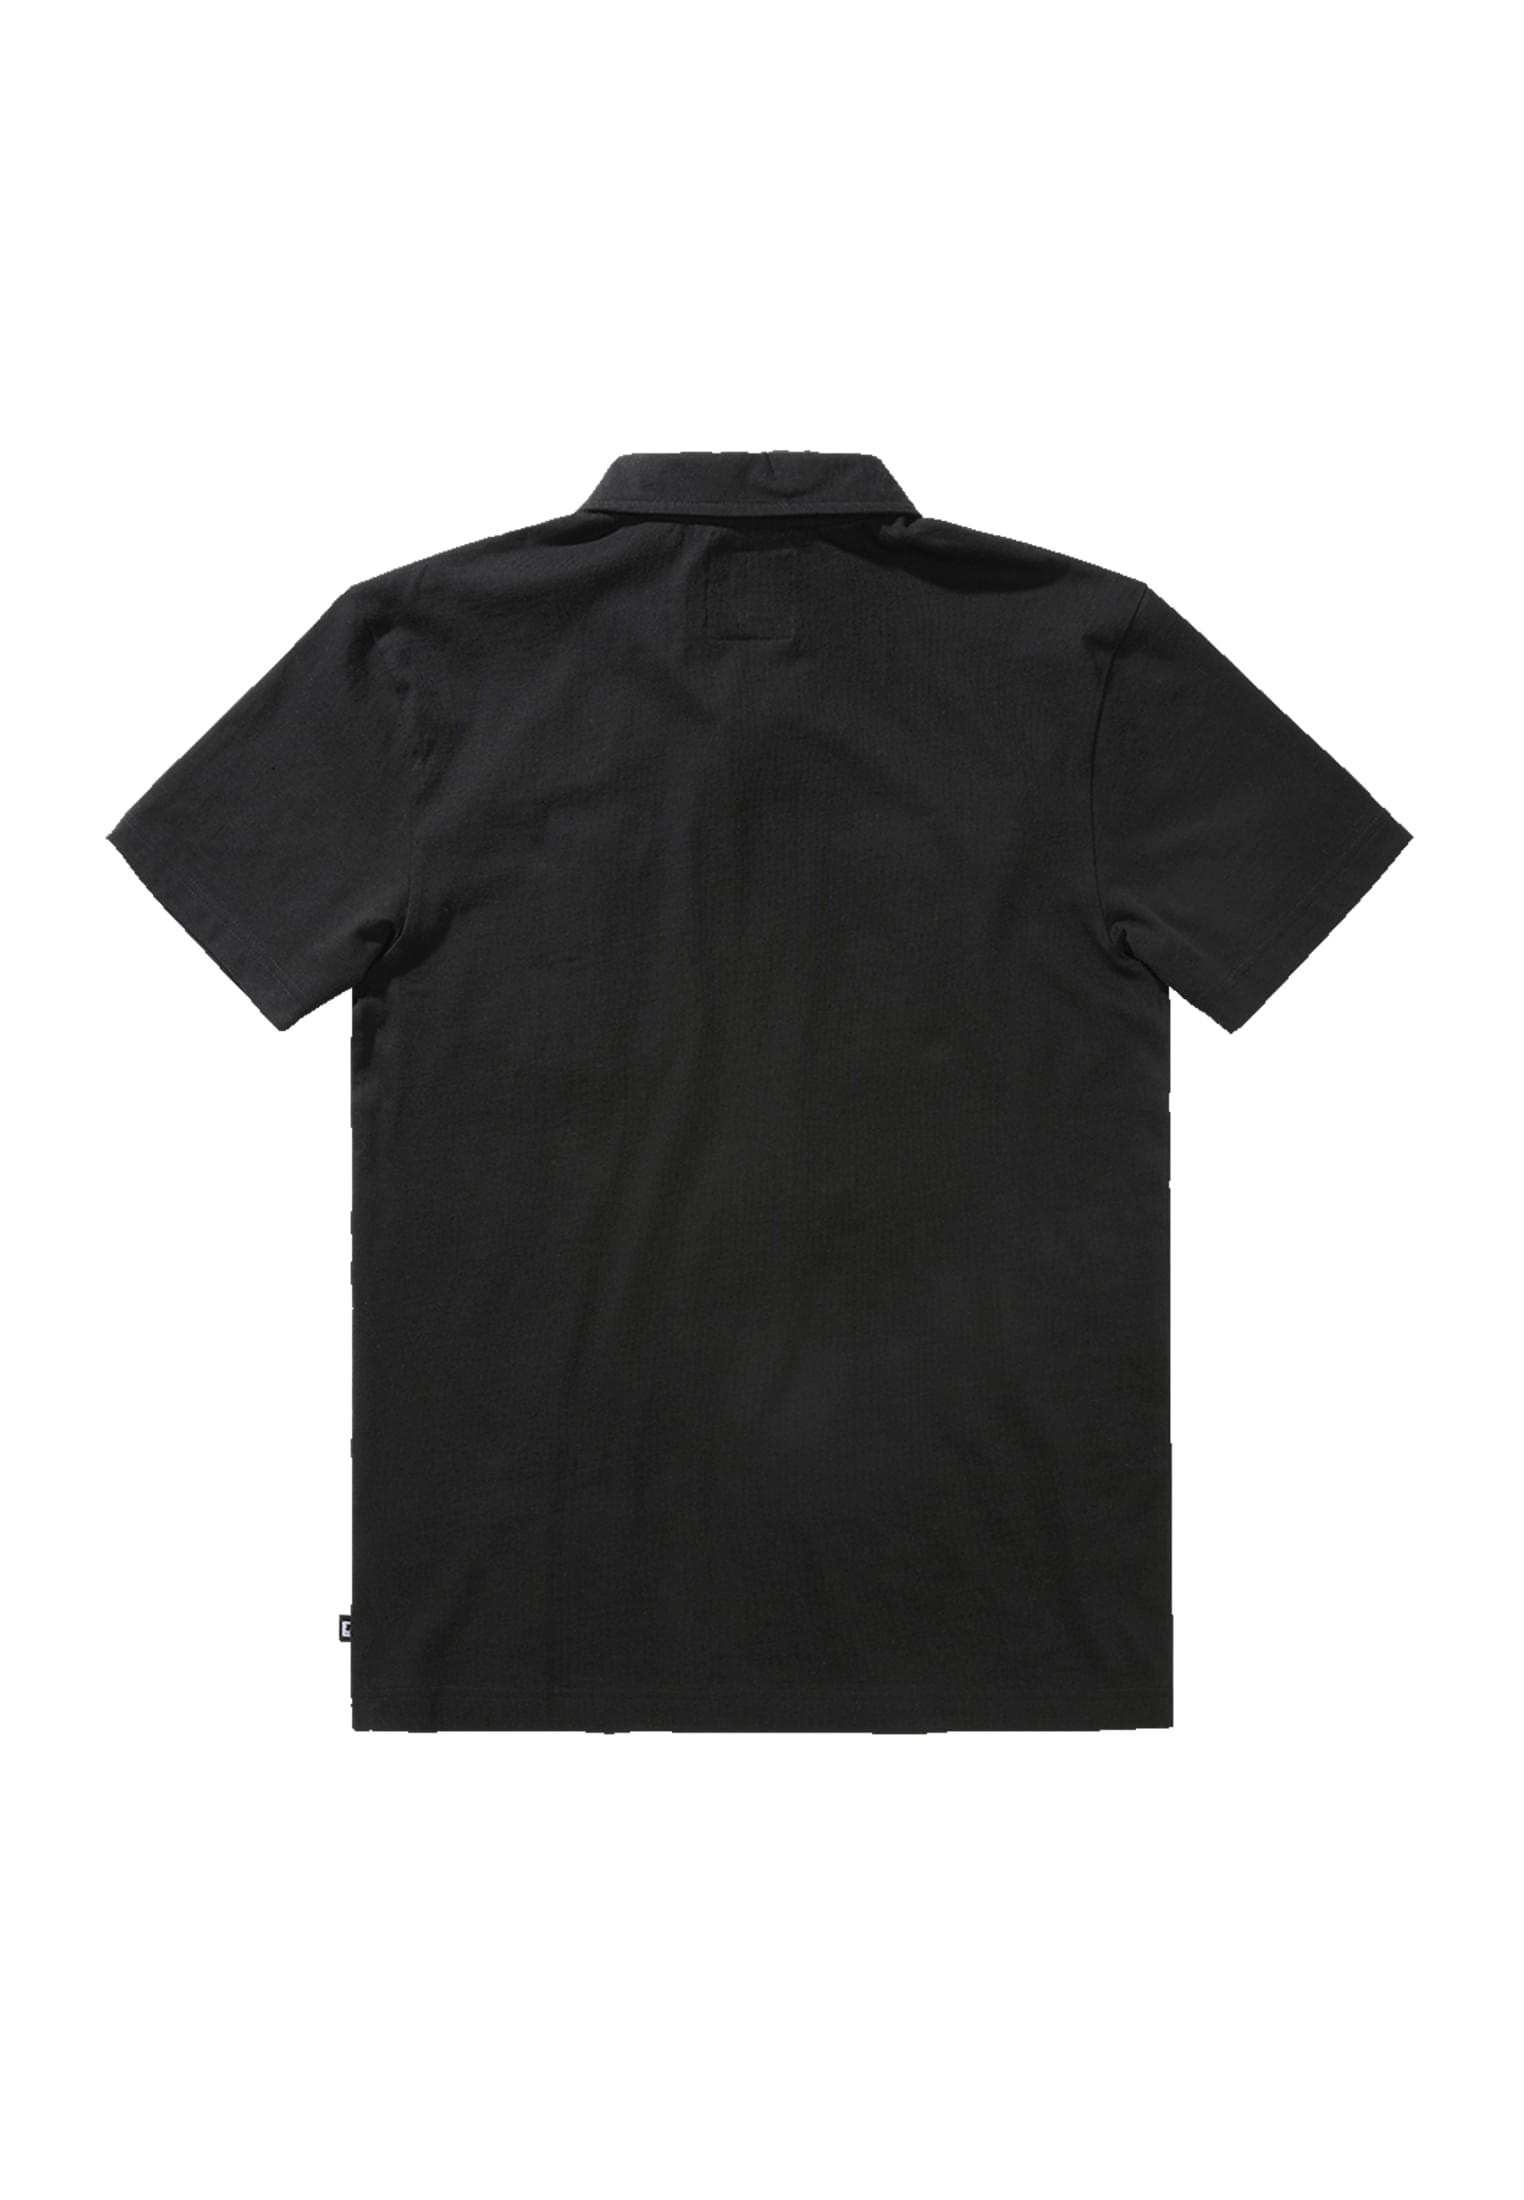 Pullover Jersey Poloshirt Jon halfsleeve in Farbe black